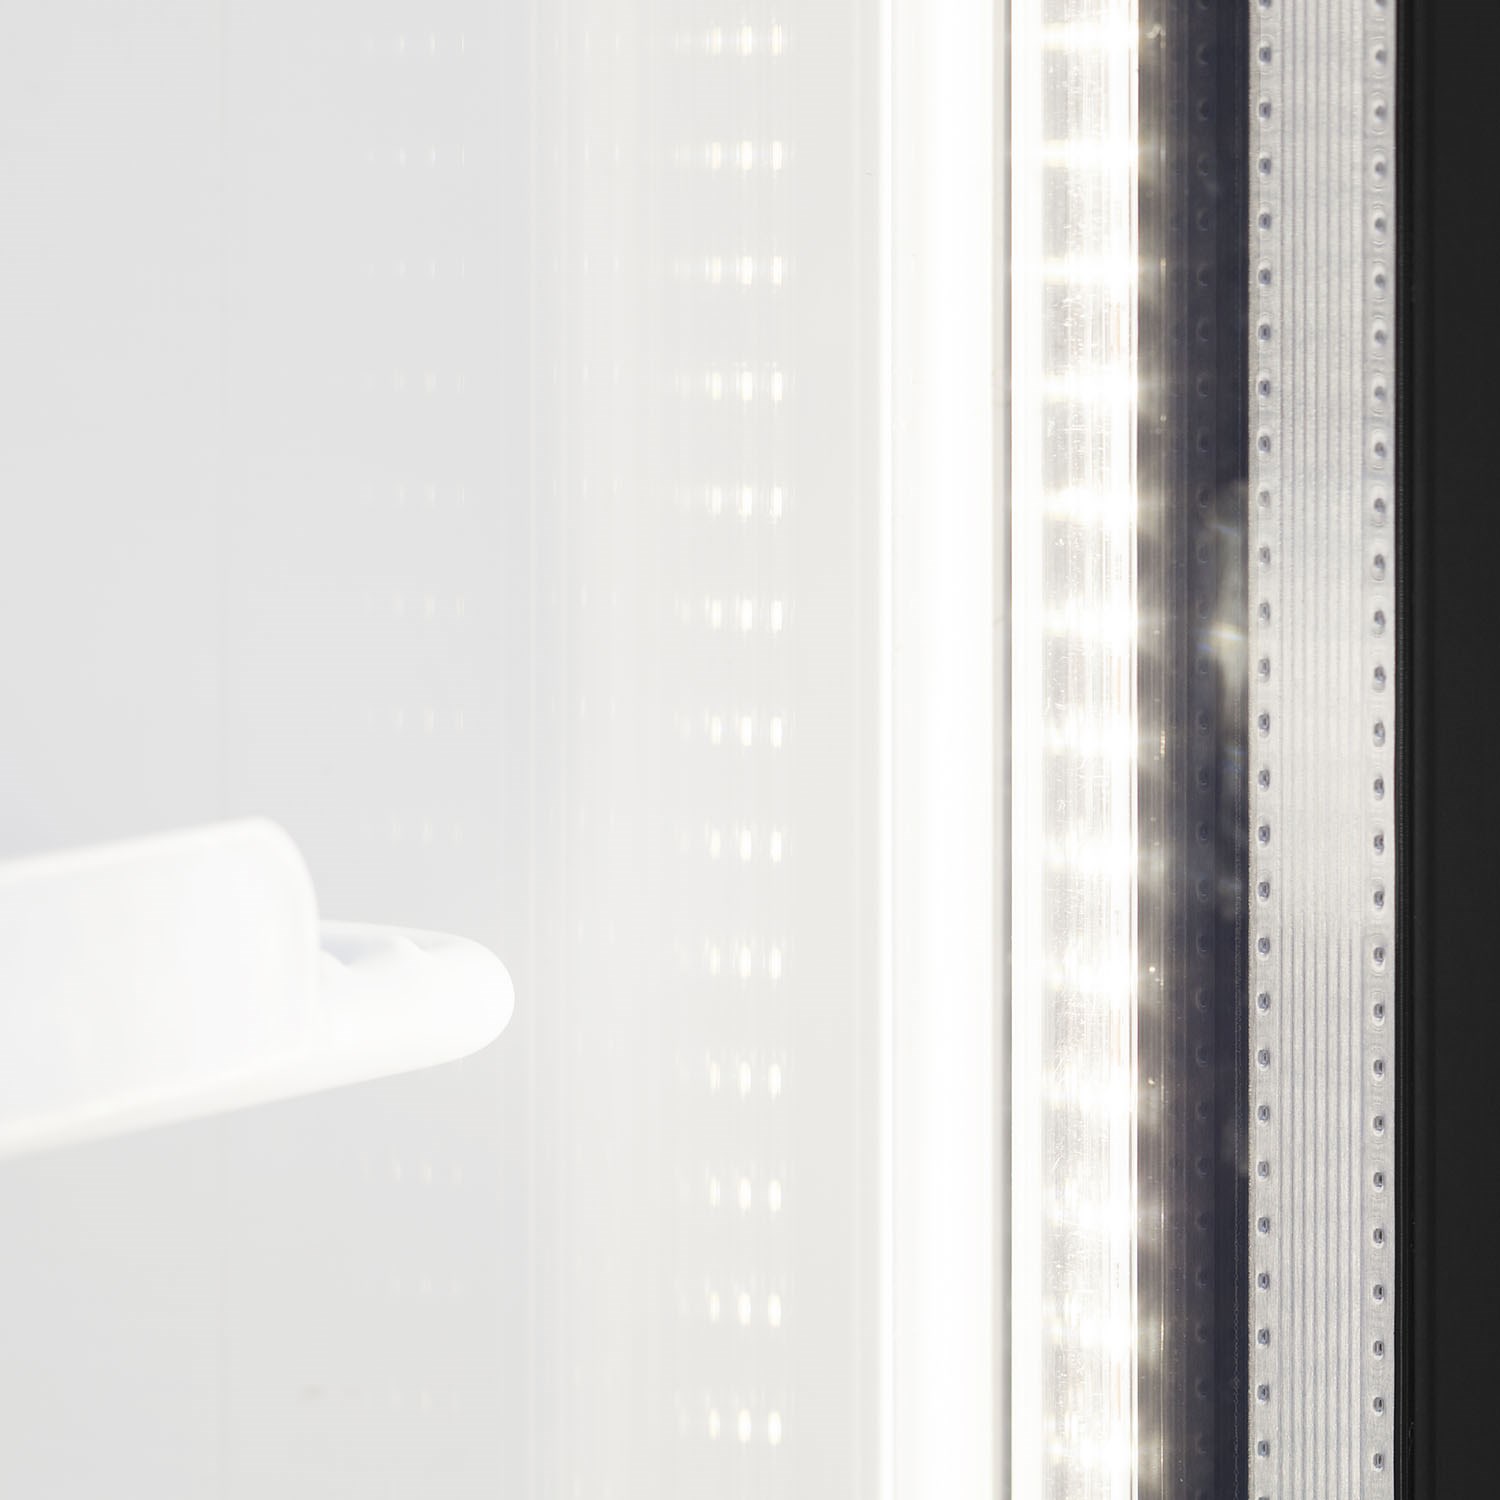 LED light - 2 vertical strips per door